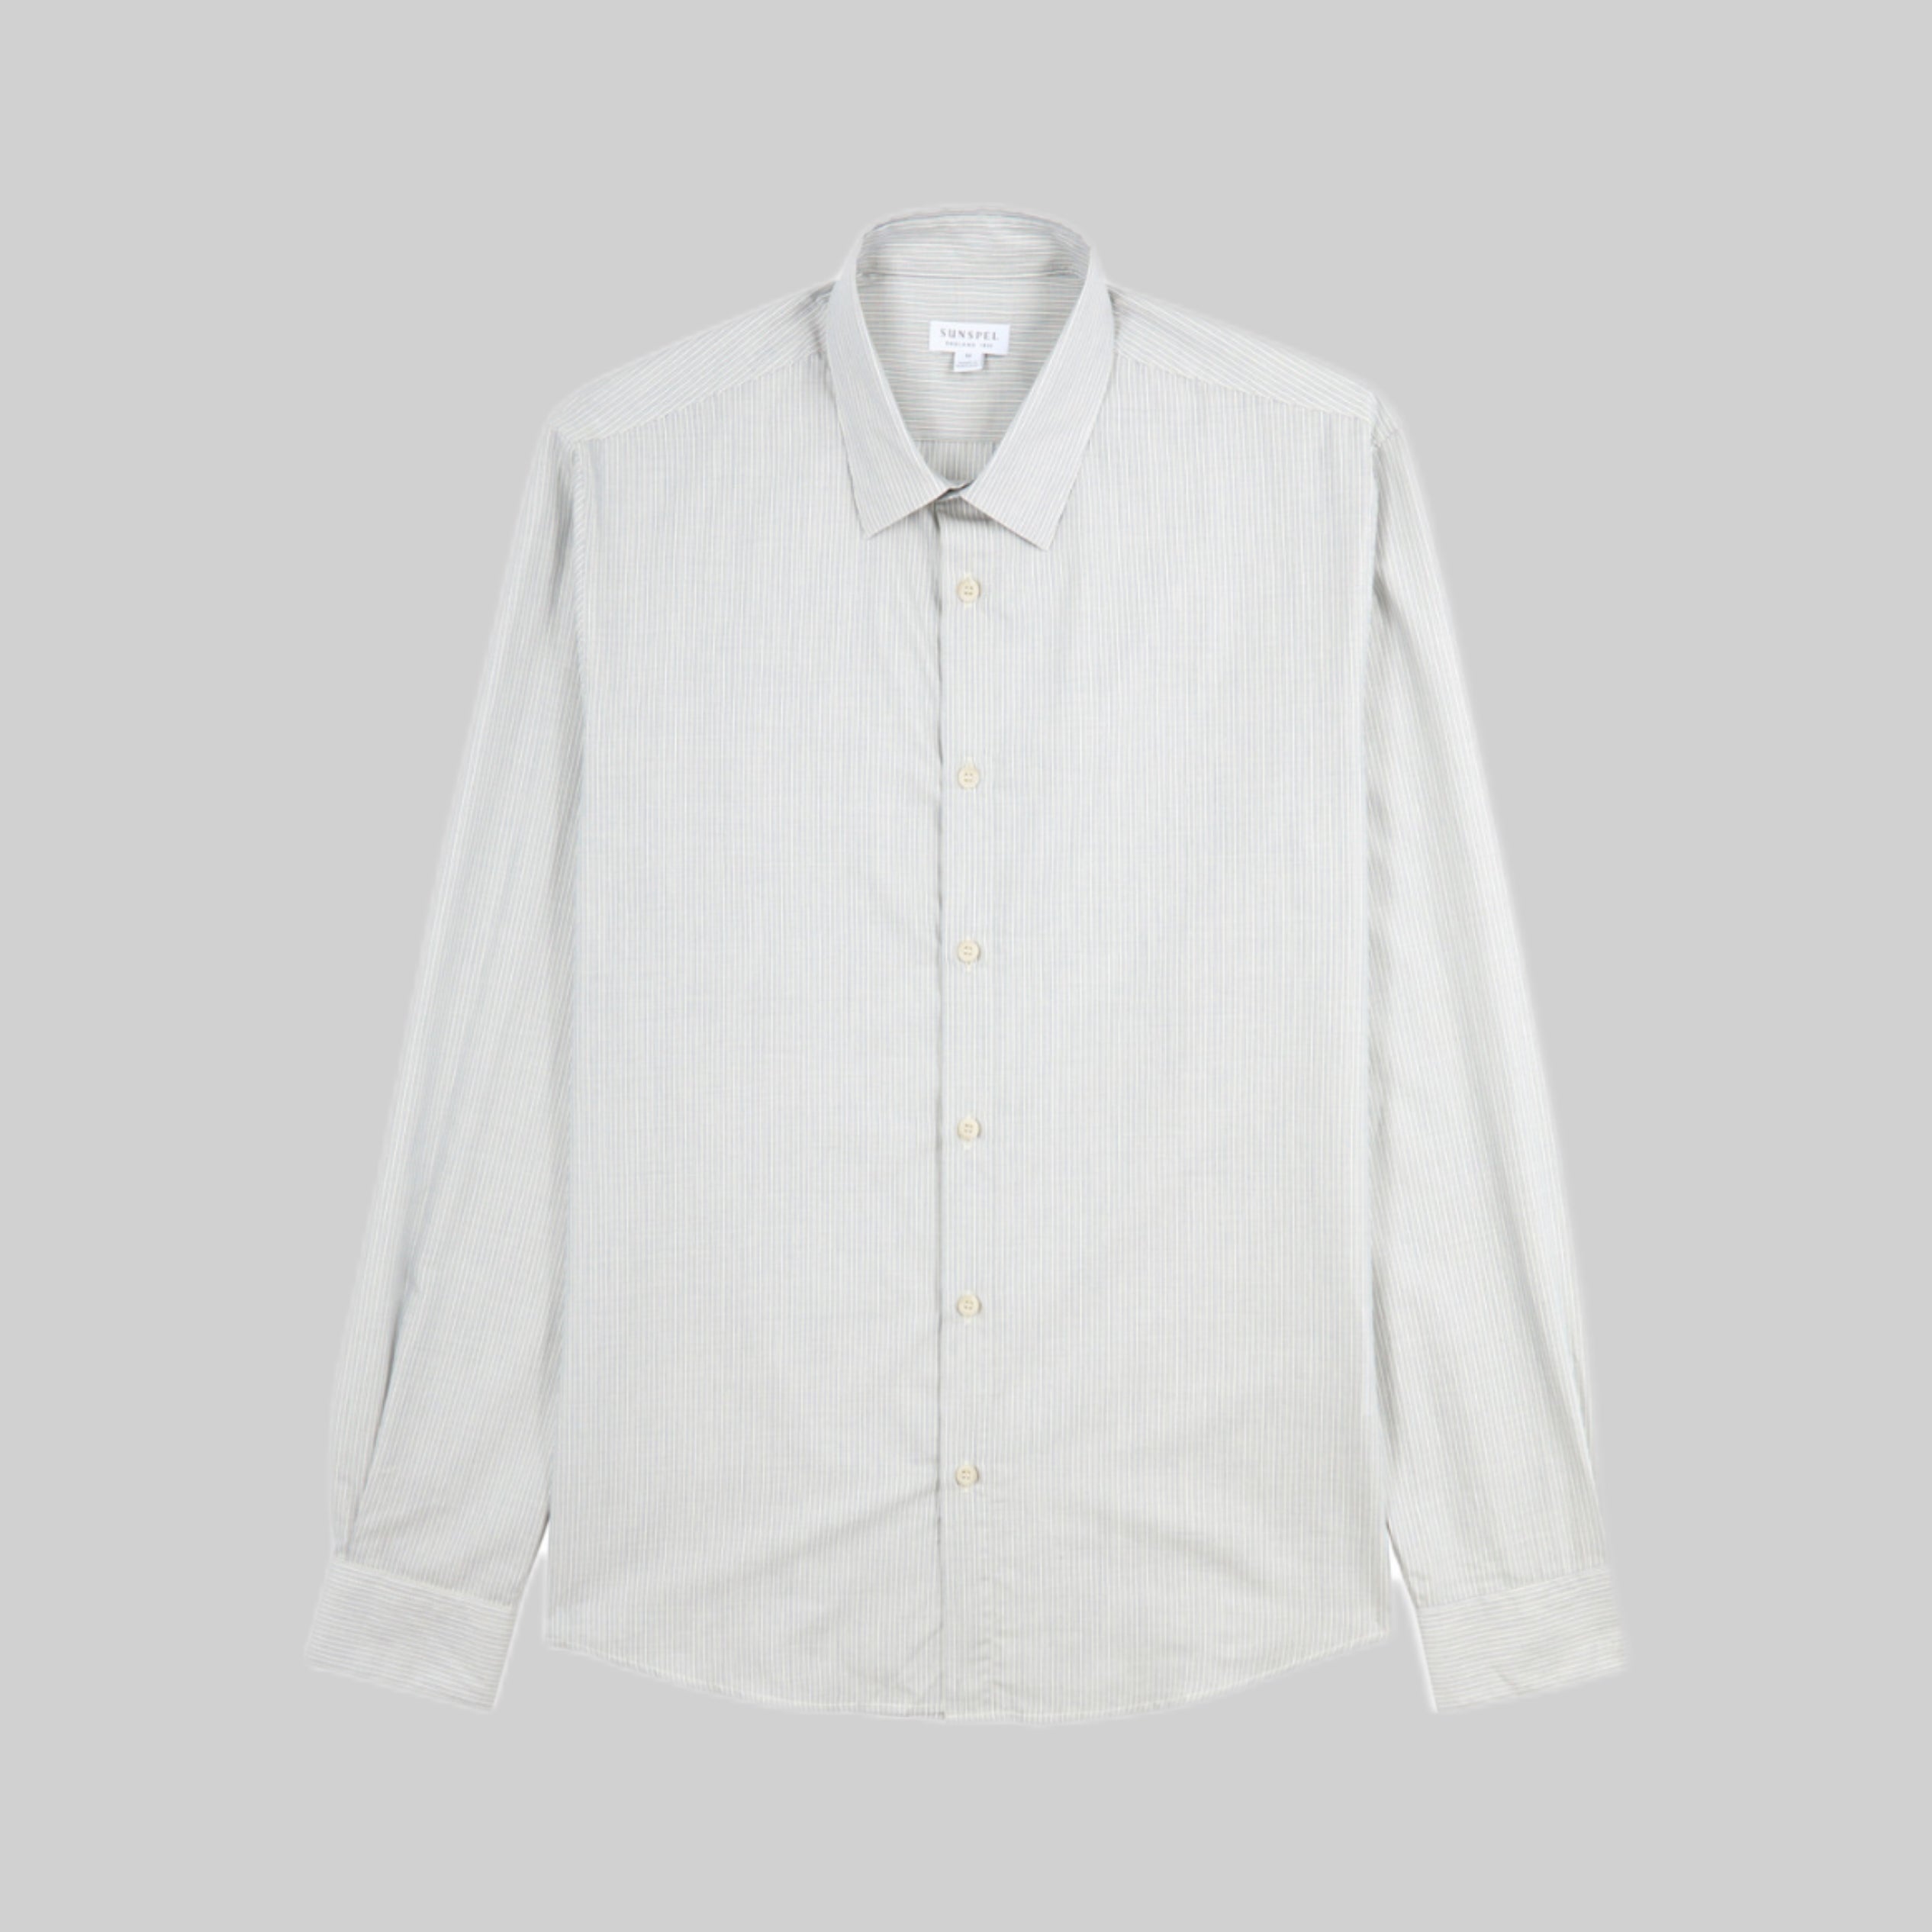 Sunspel shirt, white, men, frontside